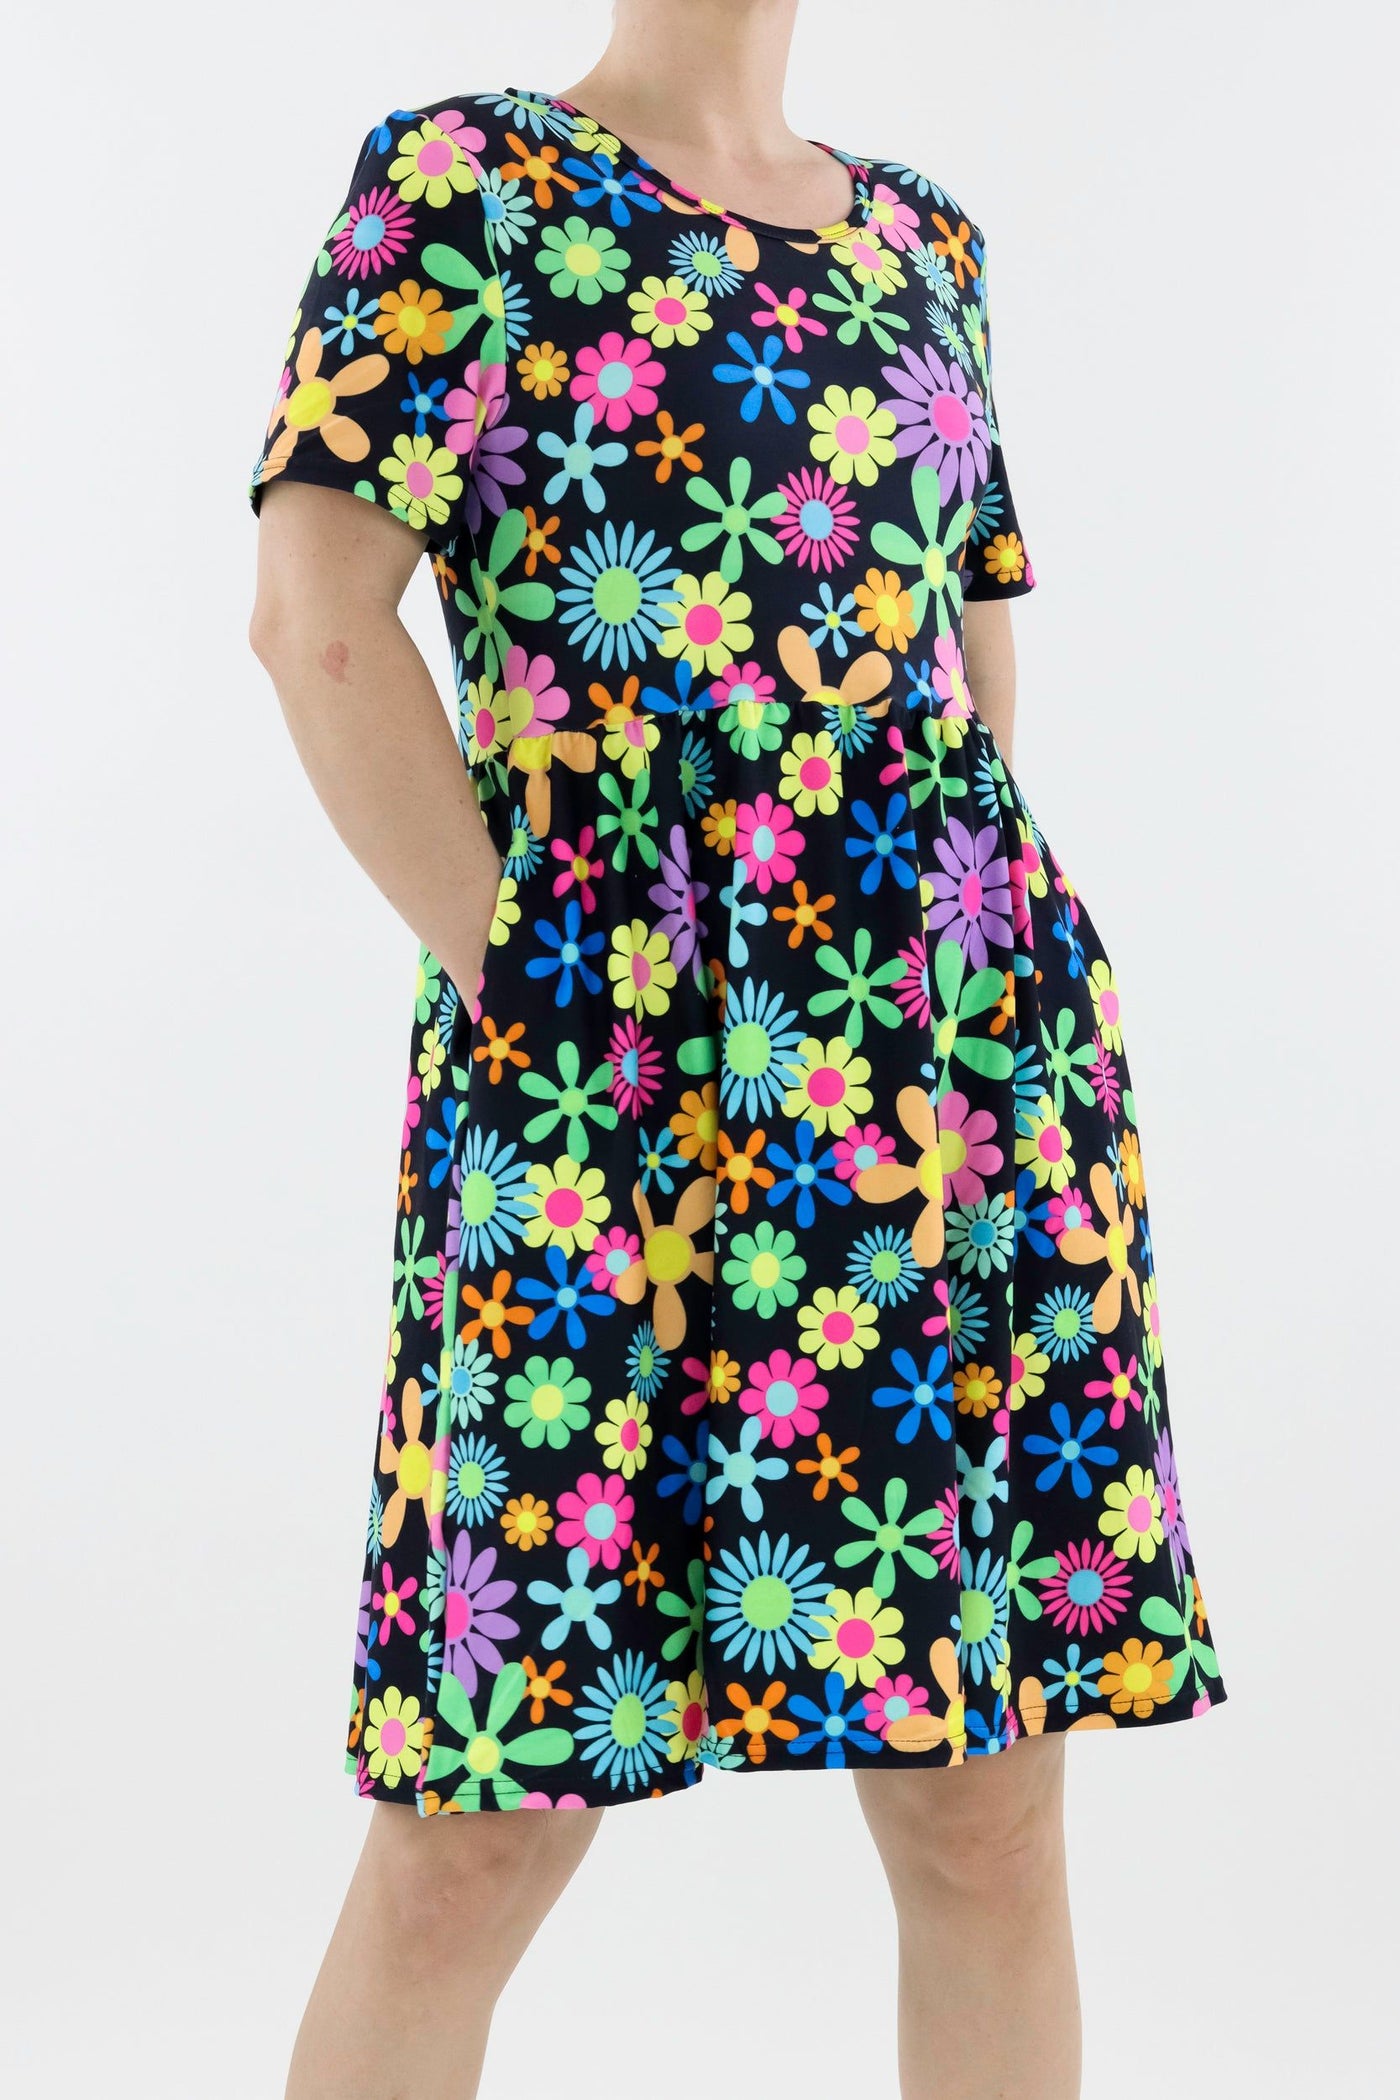 Flower Power - Short Sleeve Skater Dress - Knee Length - Side Pockets Knee Length Skater Dress Pawlie   